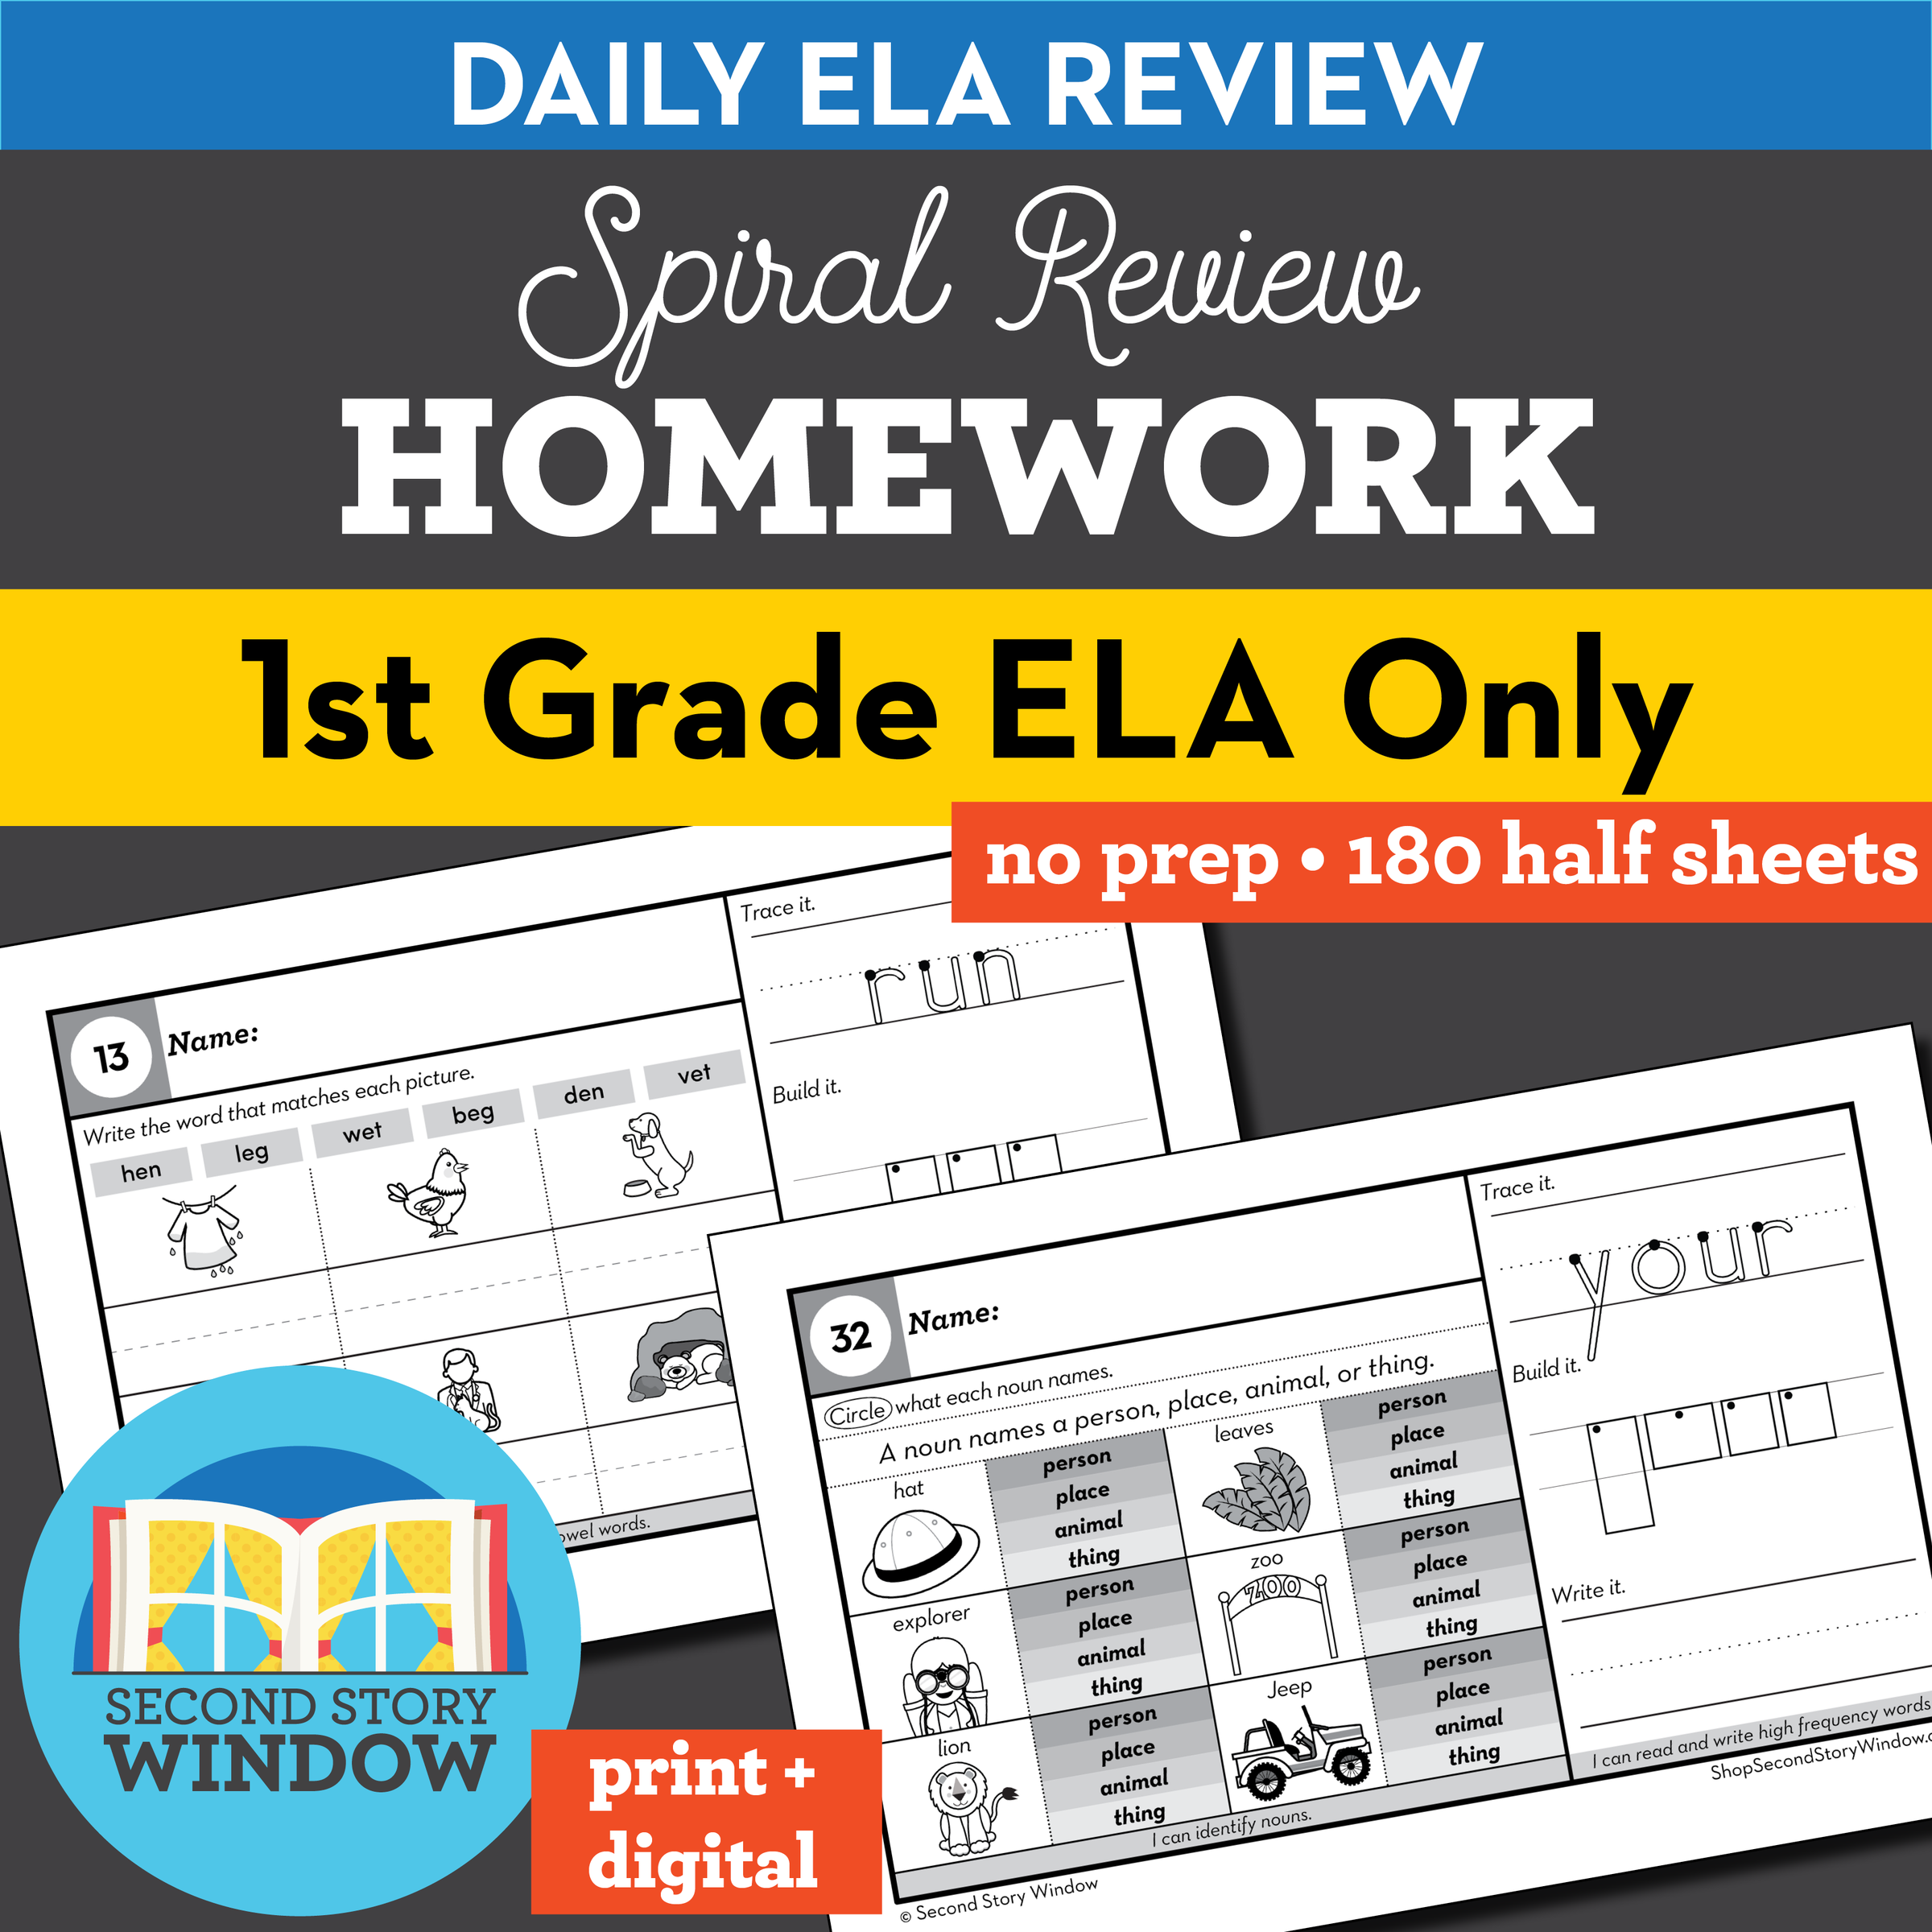 1st grade ela homework